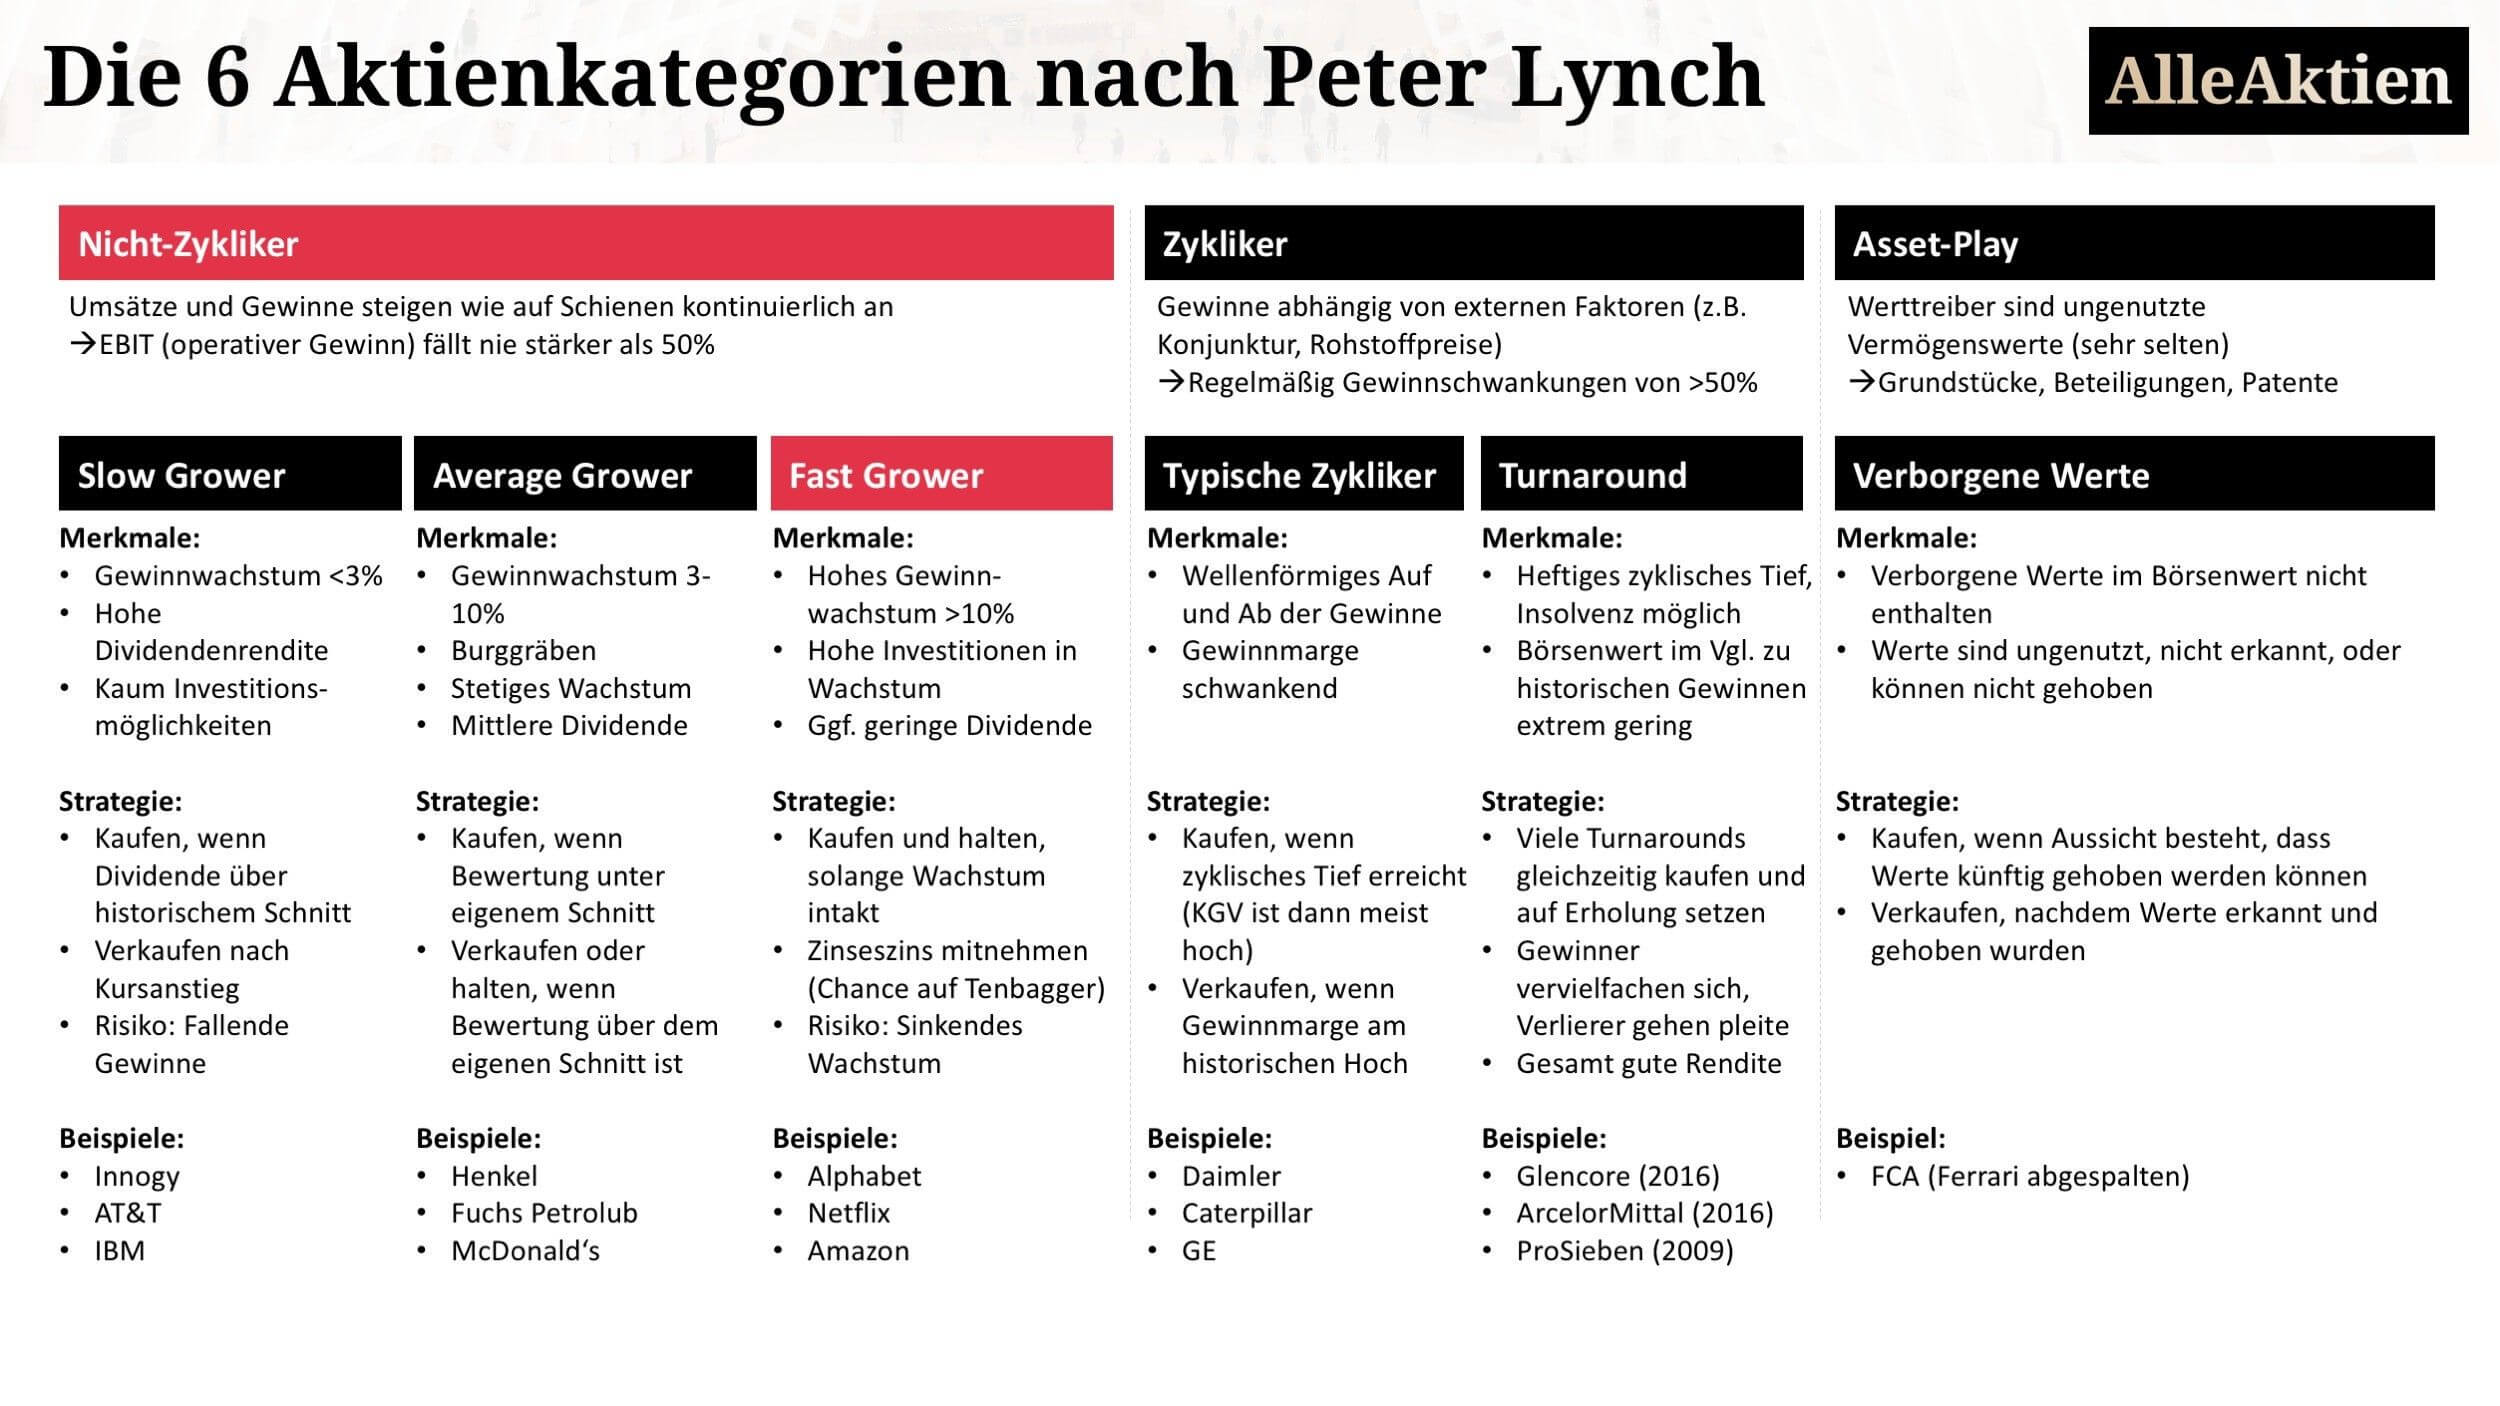 AlleAktien-Peter-Lynch-Aktie-Kategorie-Strategie-3-Nicht-Zykliker-Fast-Grower